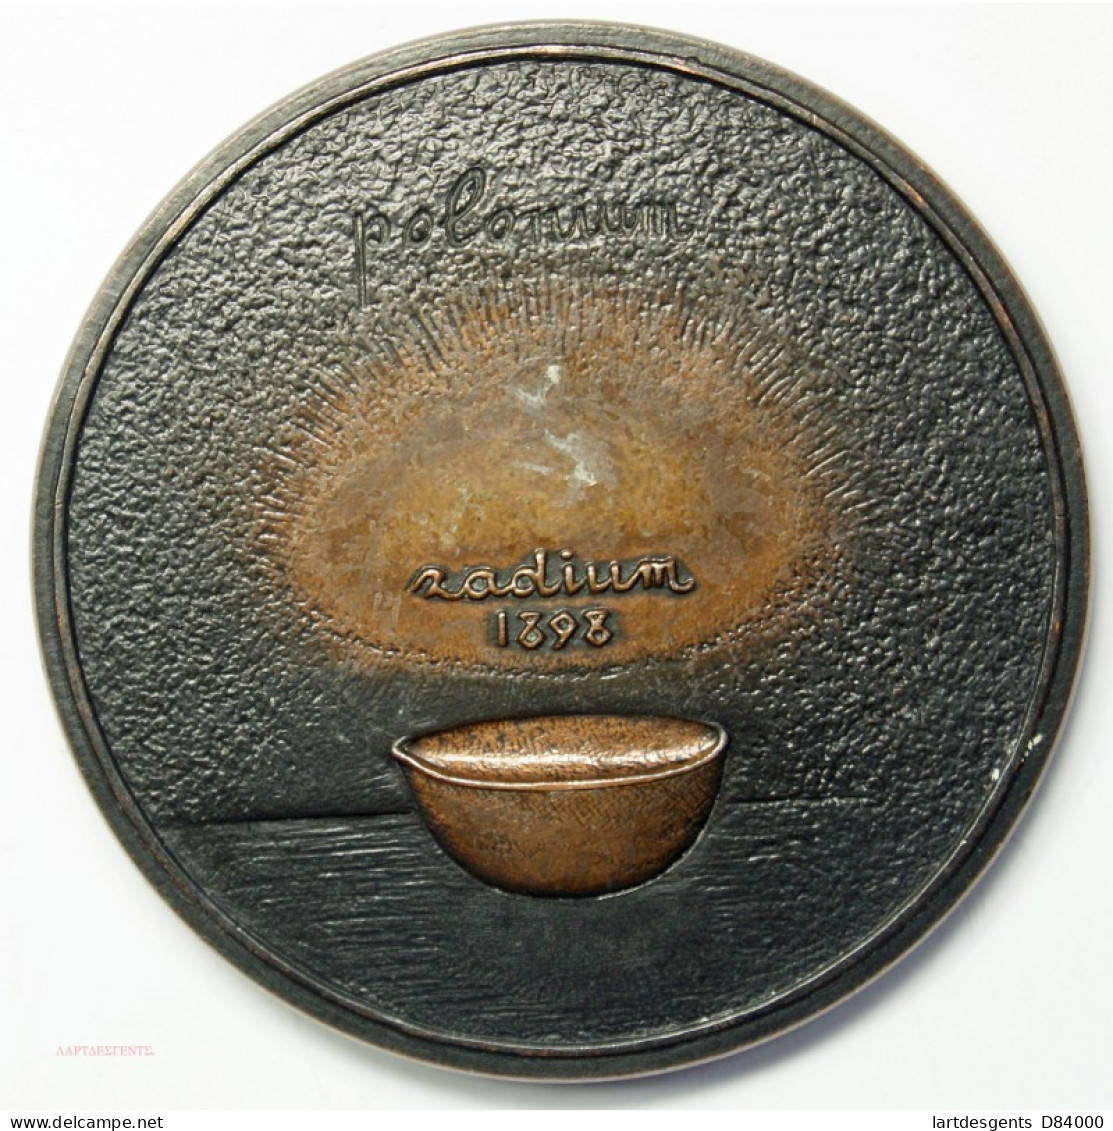 Médaille MARIE CURIE 1967 (Polonium Radium 1898)  Par J.H COËFFIN, Lartdesgents.fr - Royal / Of Nobility